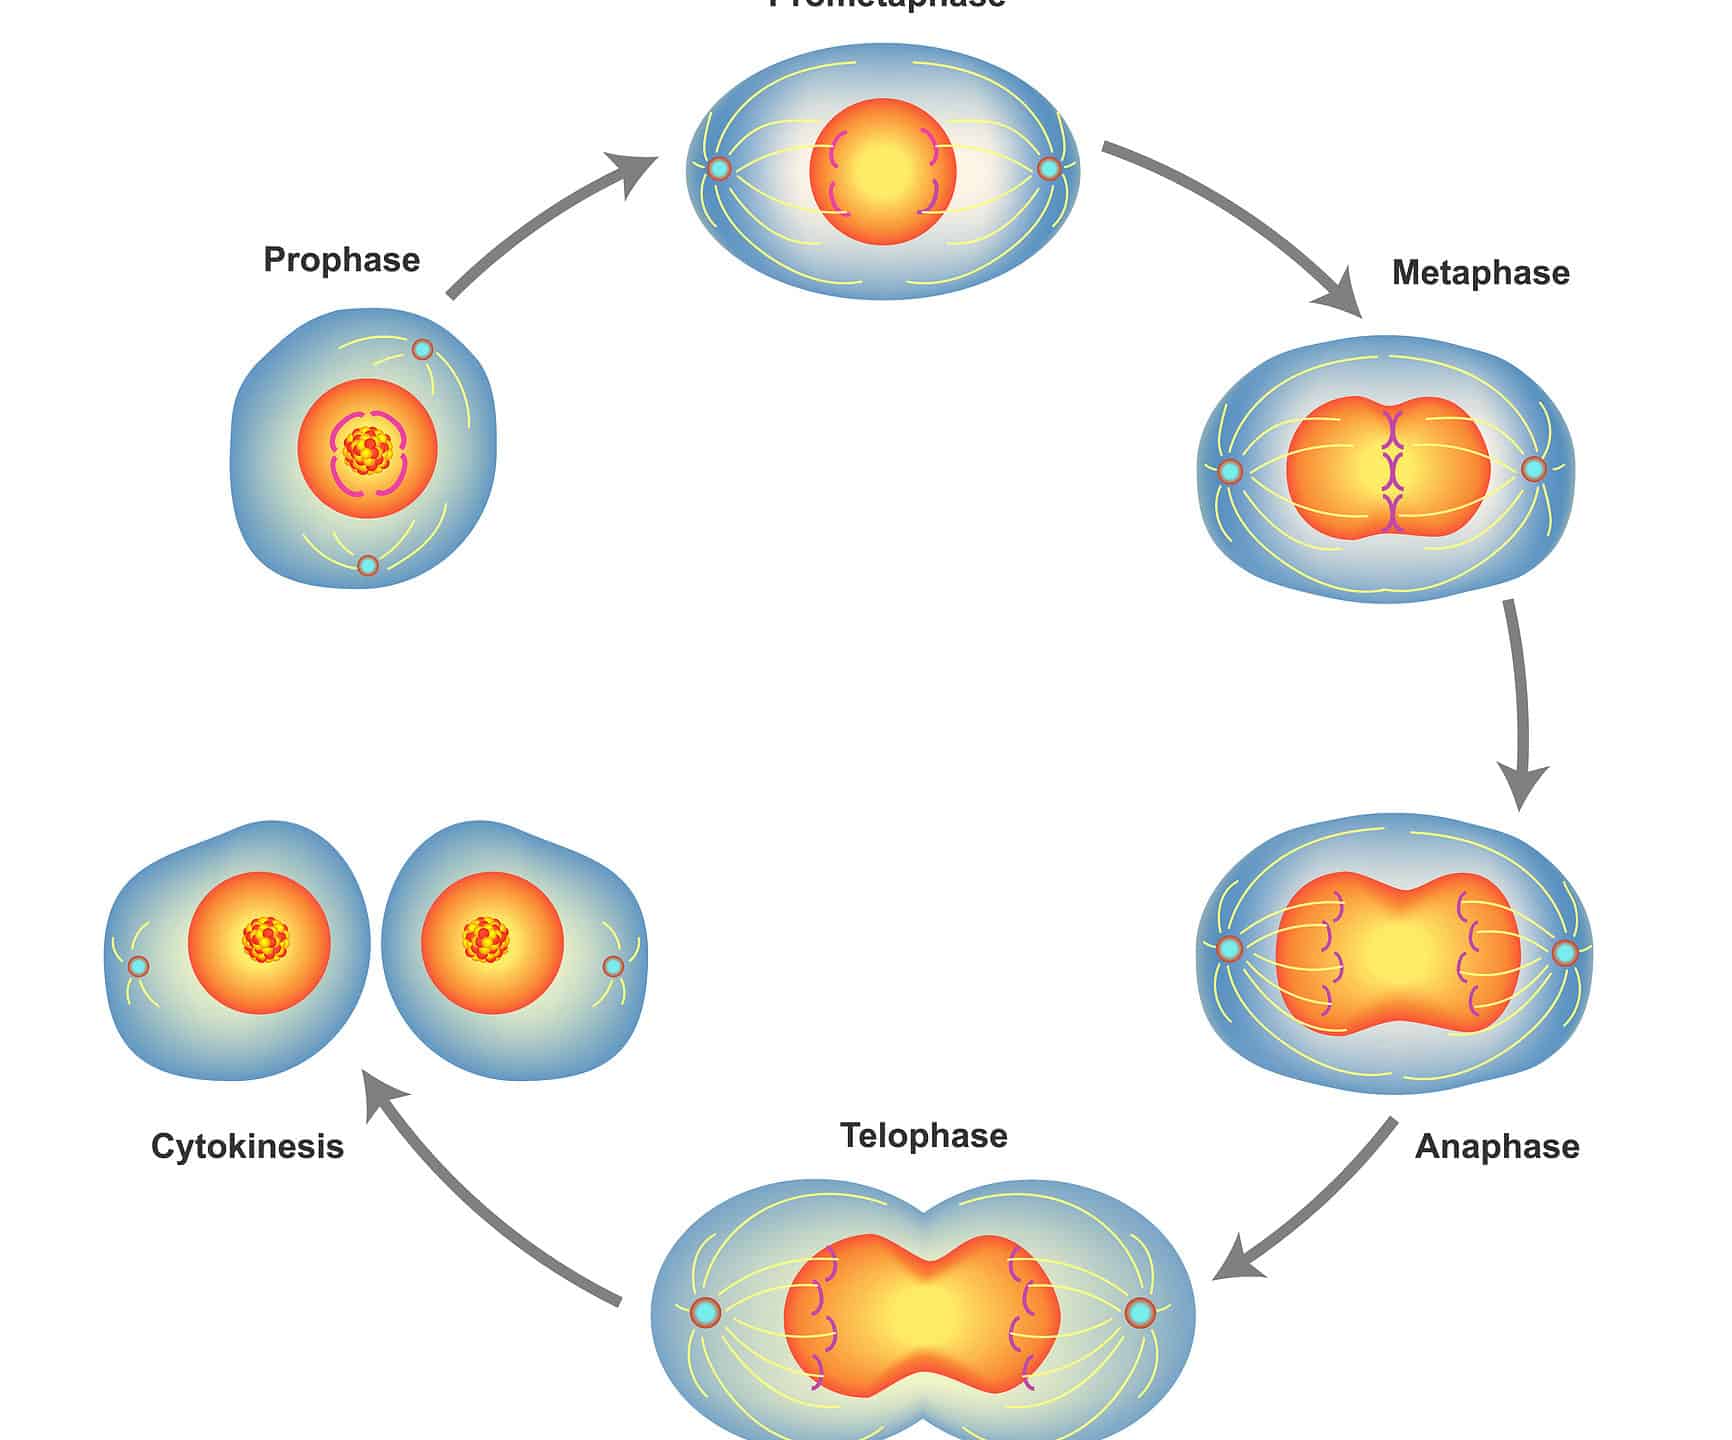 mitosis metaphase diagram